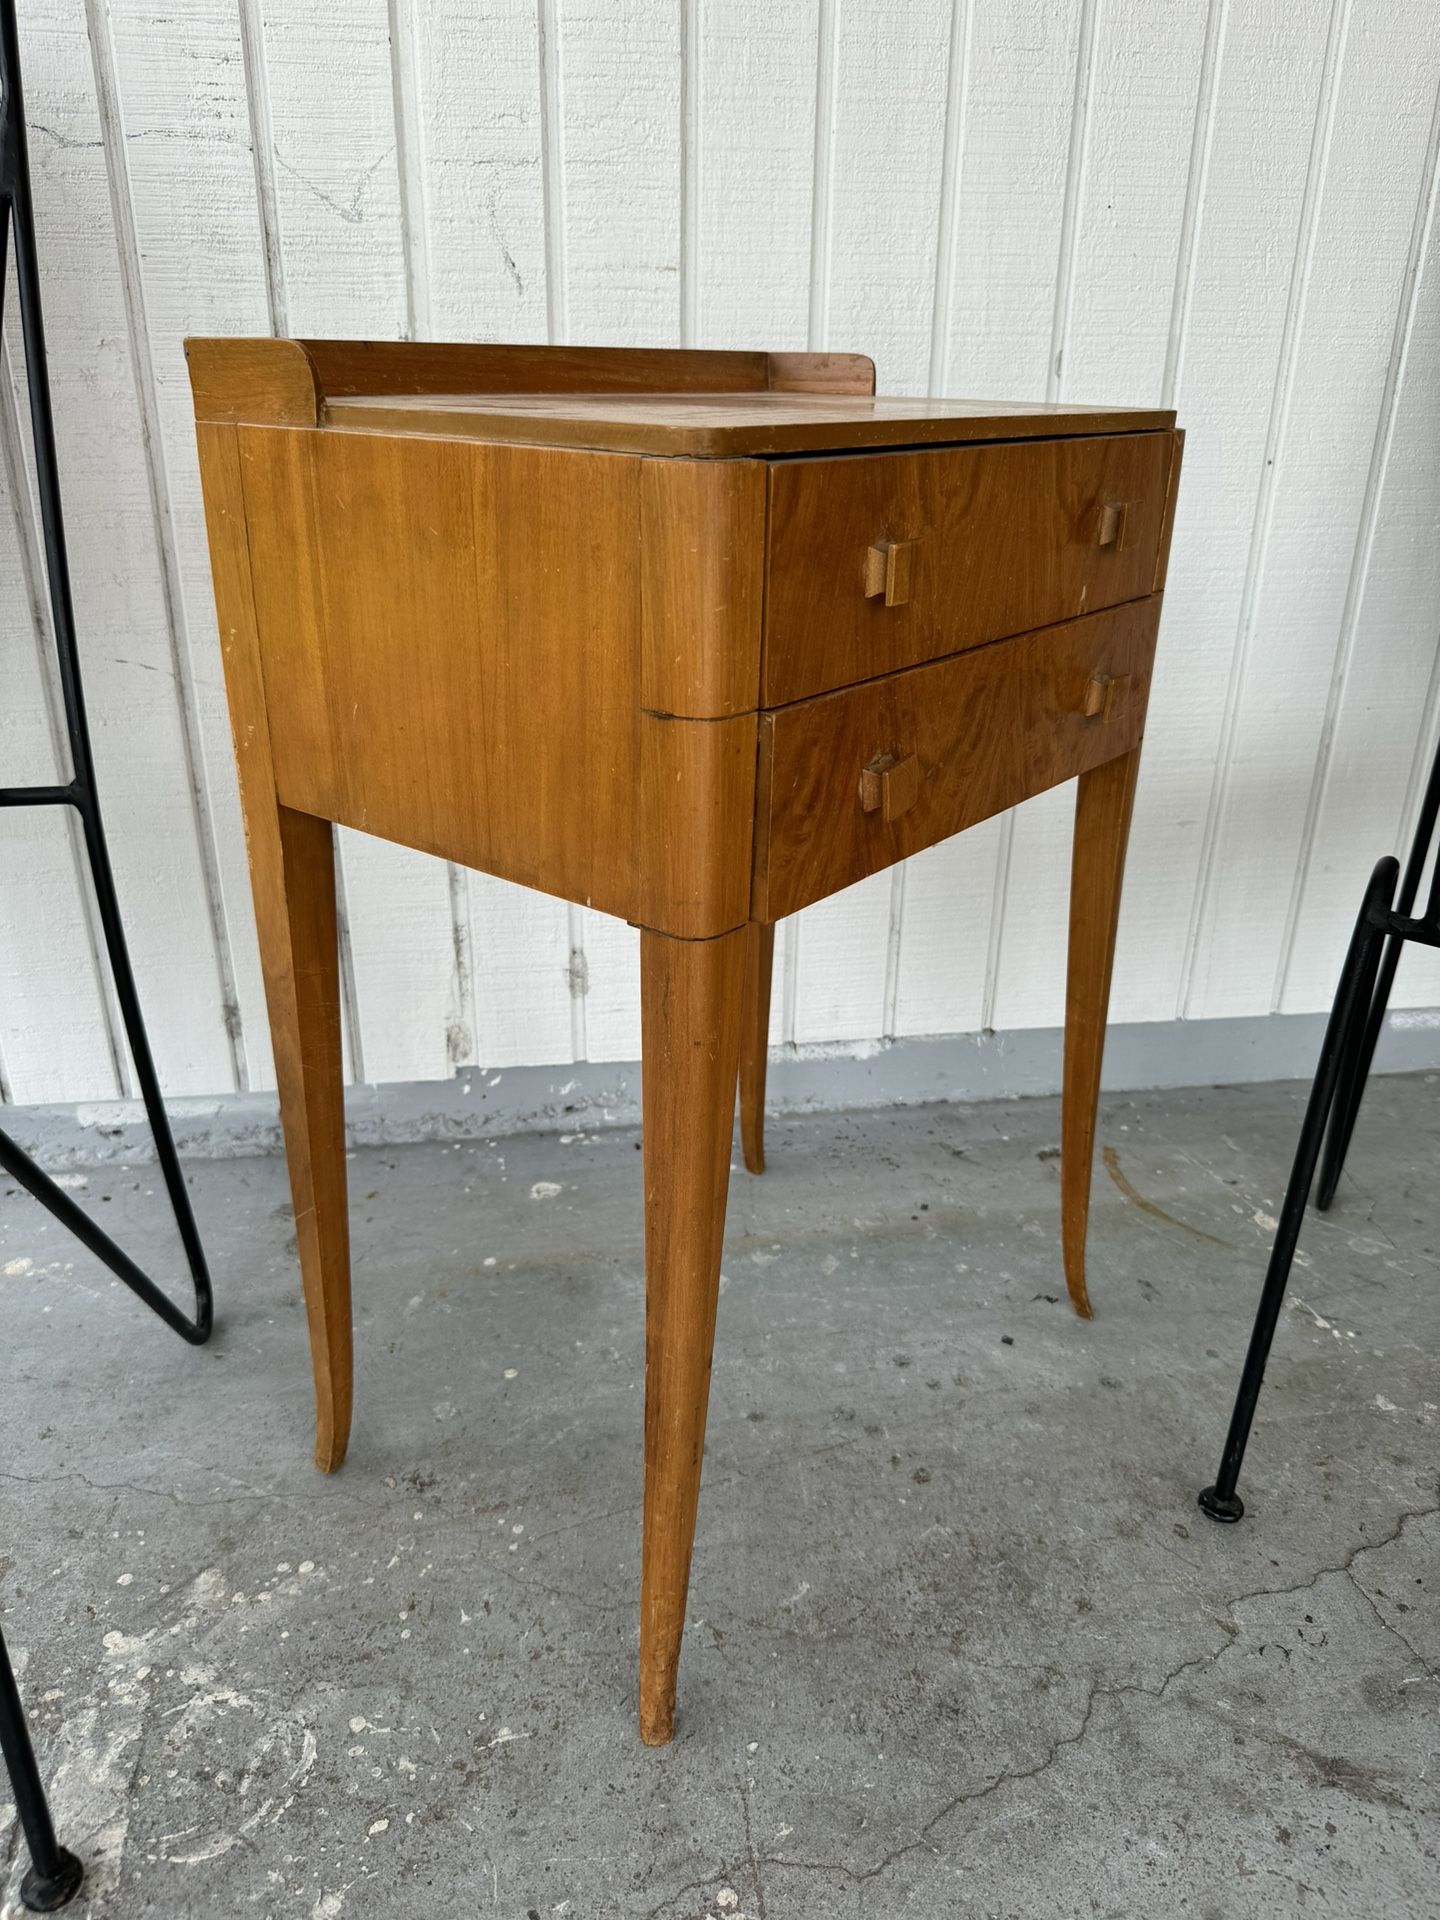 Vintage art deco 2 drawer bedside table $75